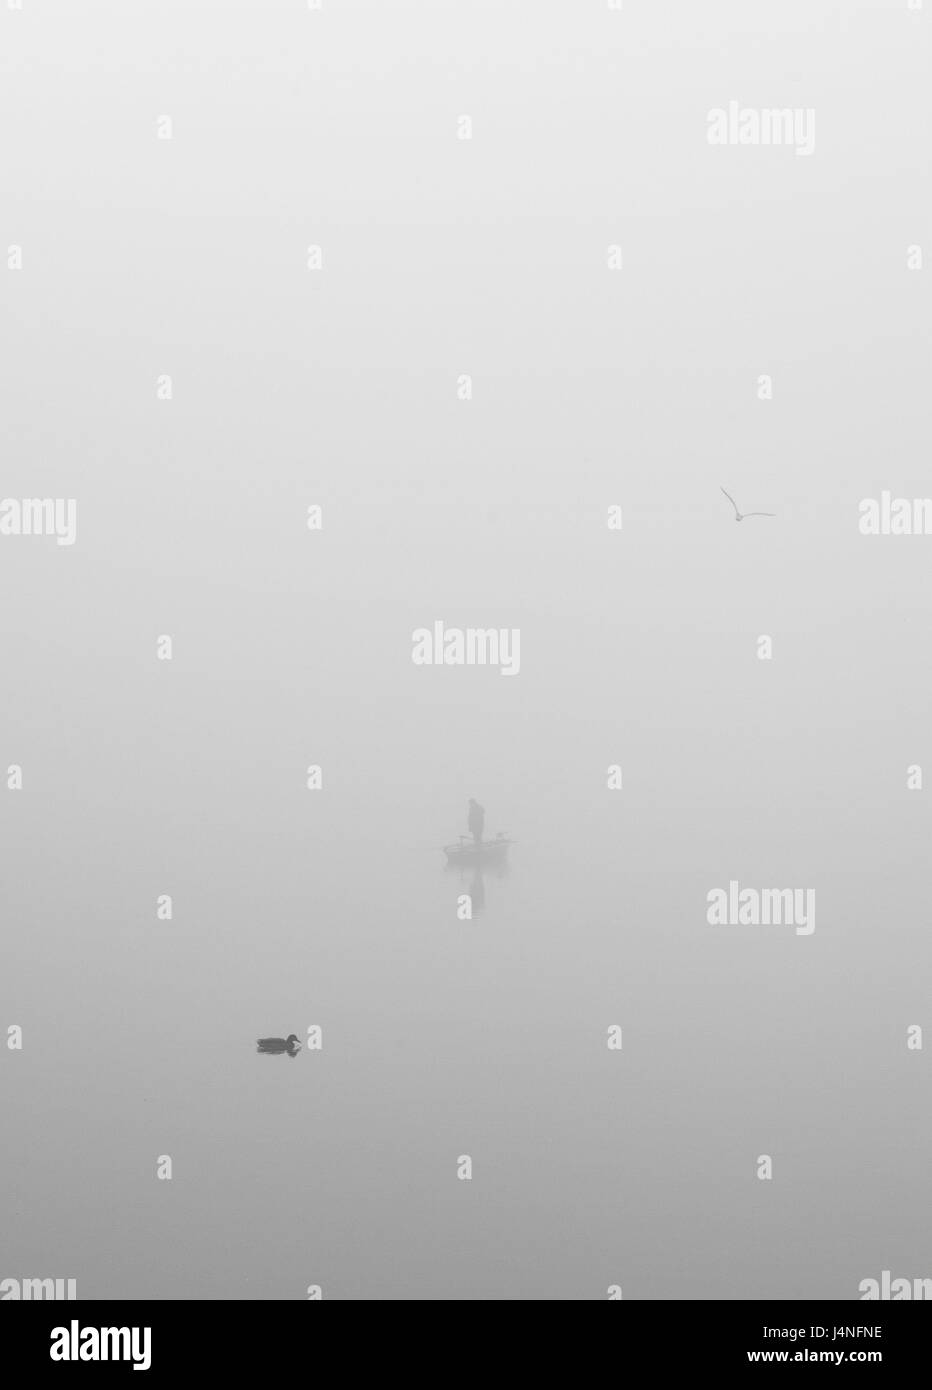 Lake, brouillard, silhouette, bateau de pêche, canard, eaux, personne, personne, oar boot, animal, gloomily, terne, brouillard, mystérieusement, non reconnu, l'espace de copie Banque D'Images